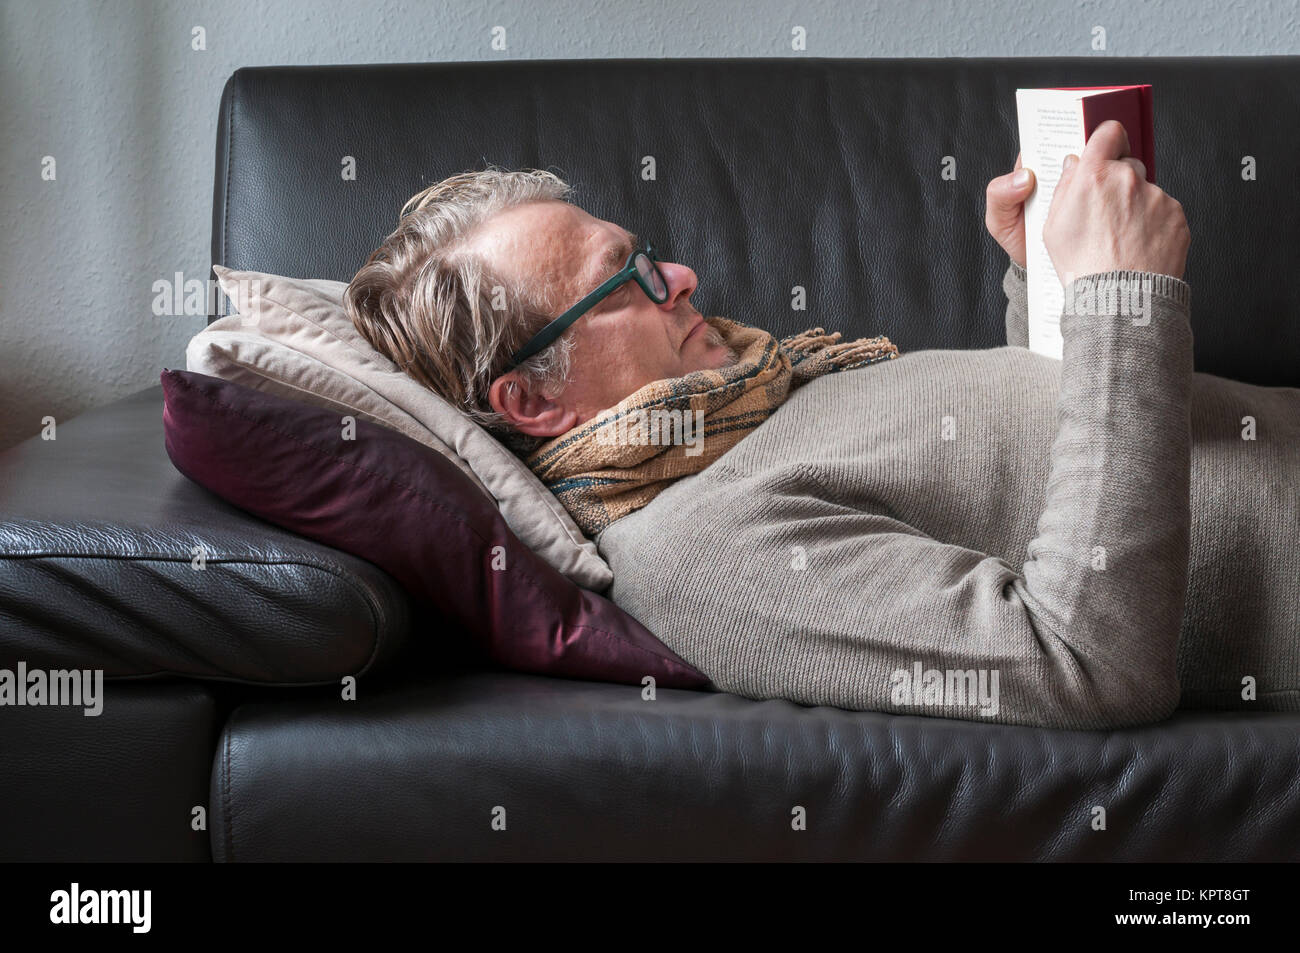 Liegender Mann auf einem divano mit Brille und Schal liest in einem Buch. Foto Stock